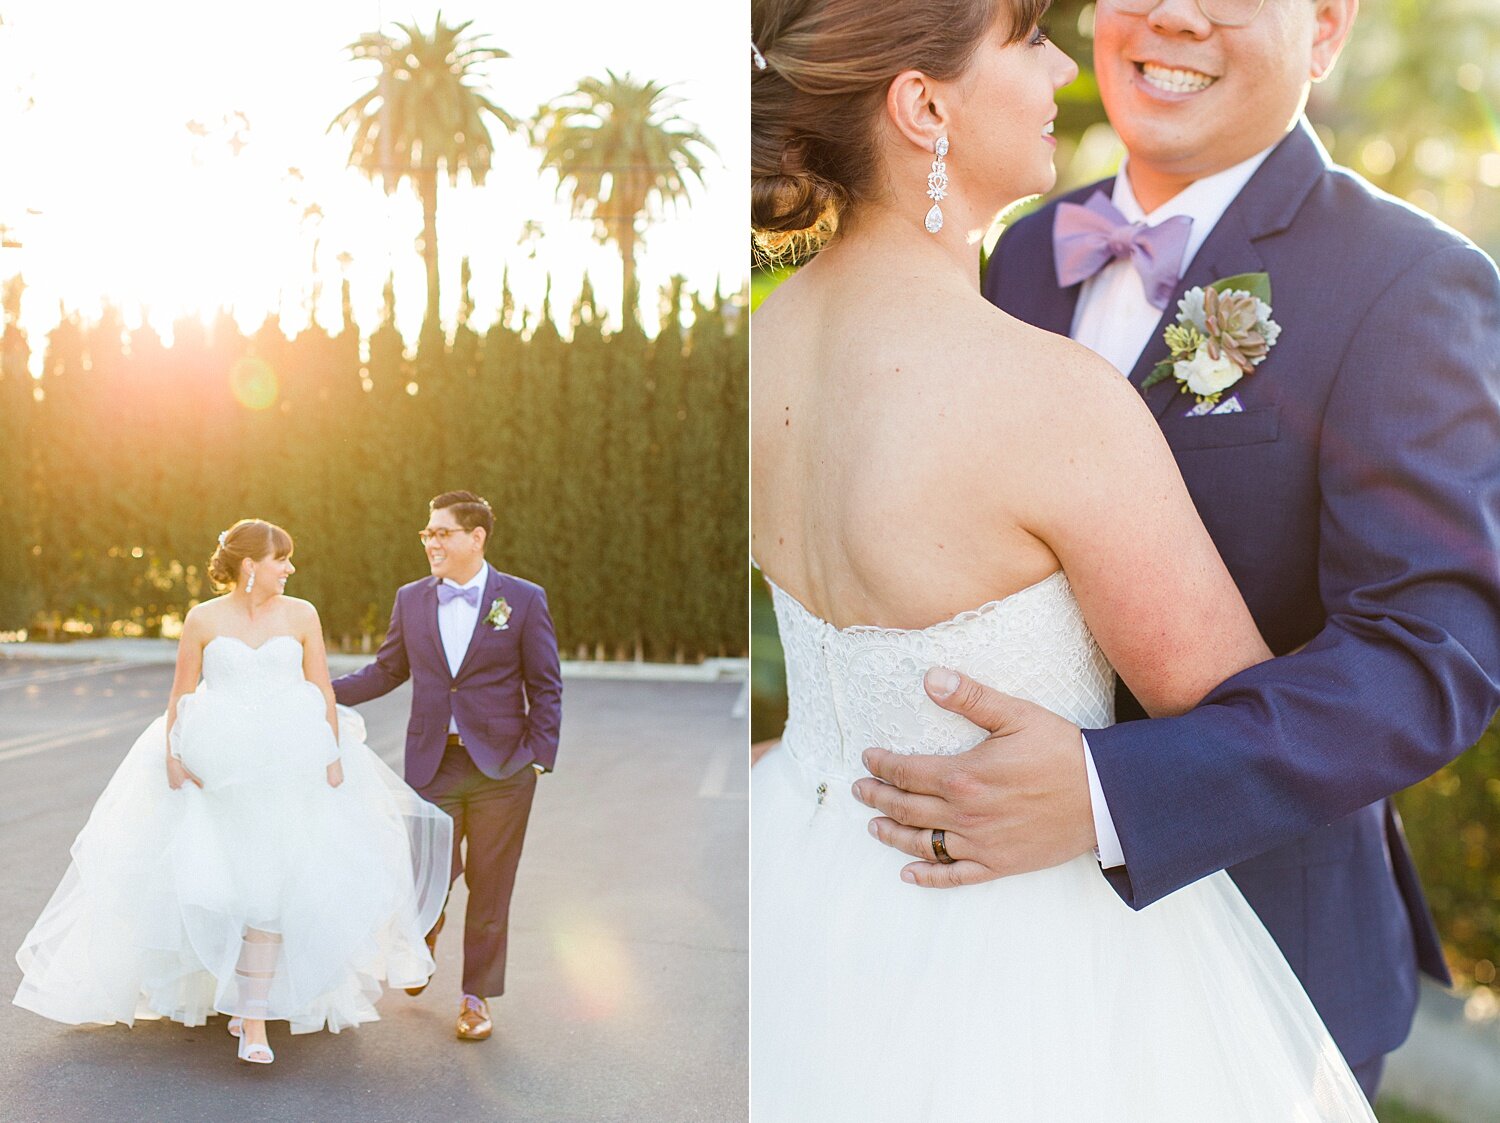 Colony House | Orange County Wedding Photographer | The Vondys